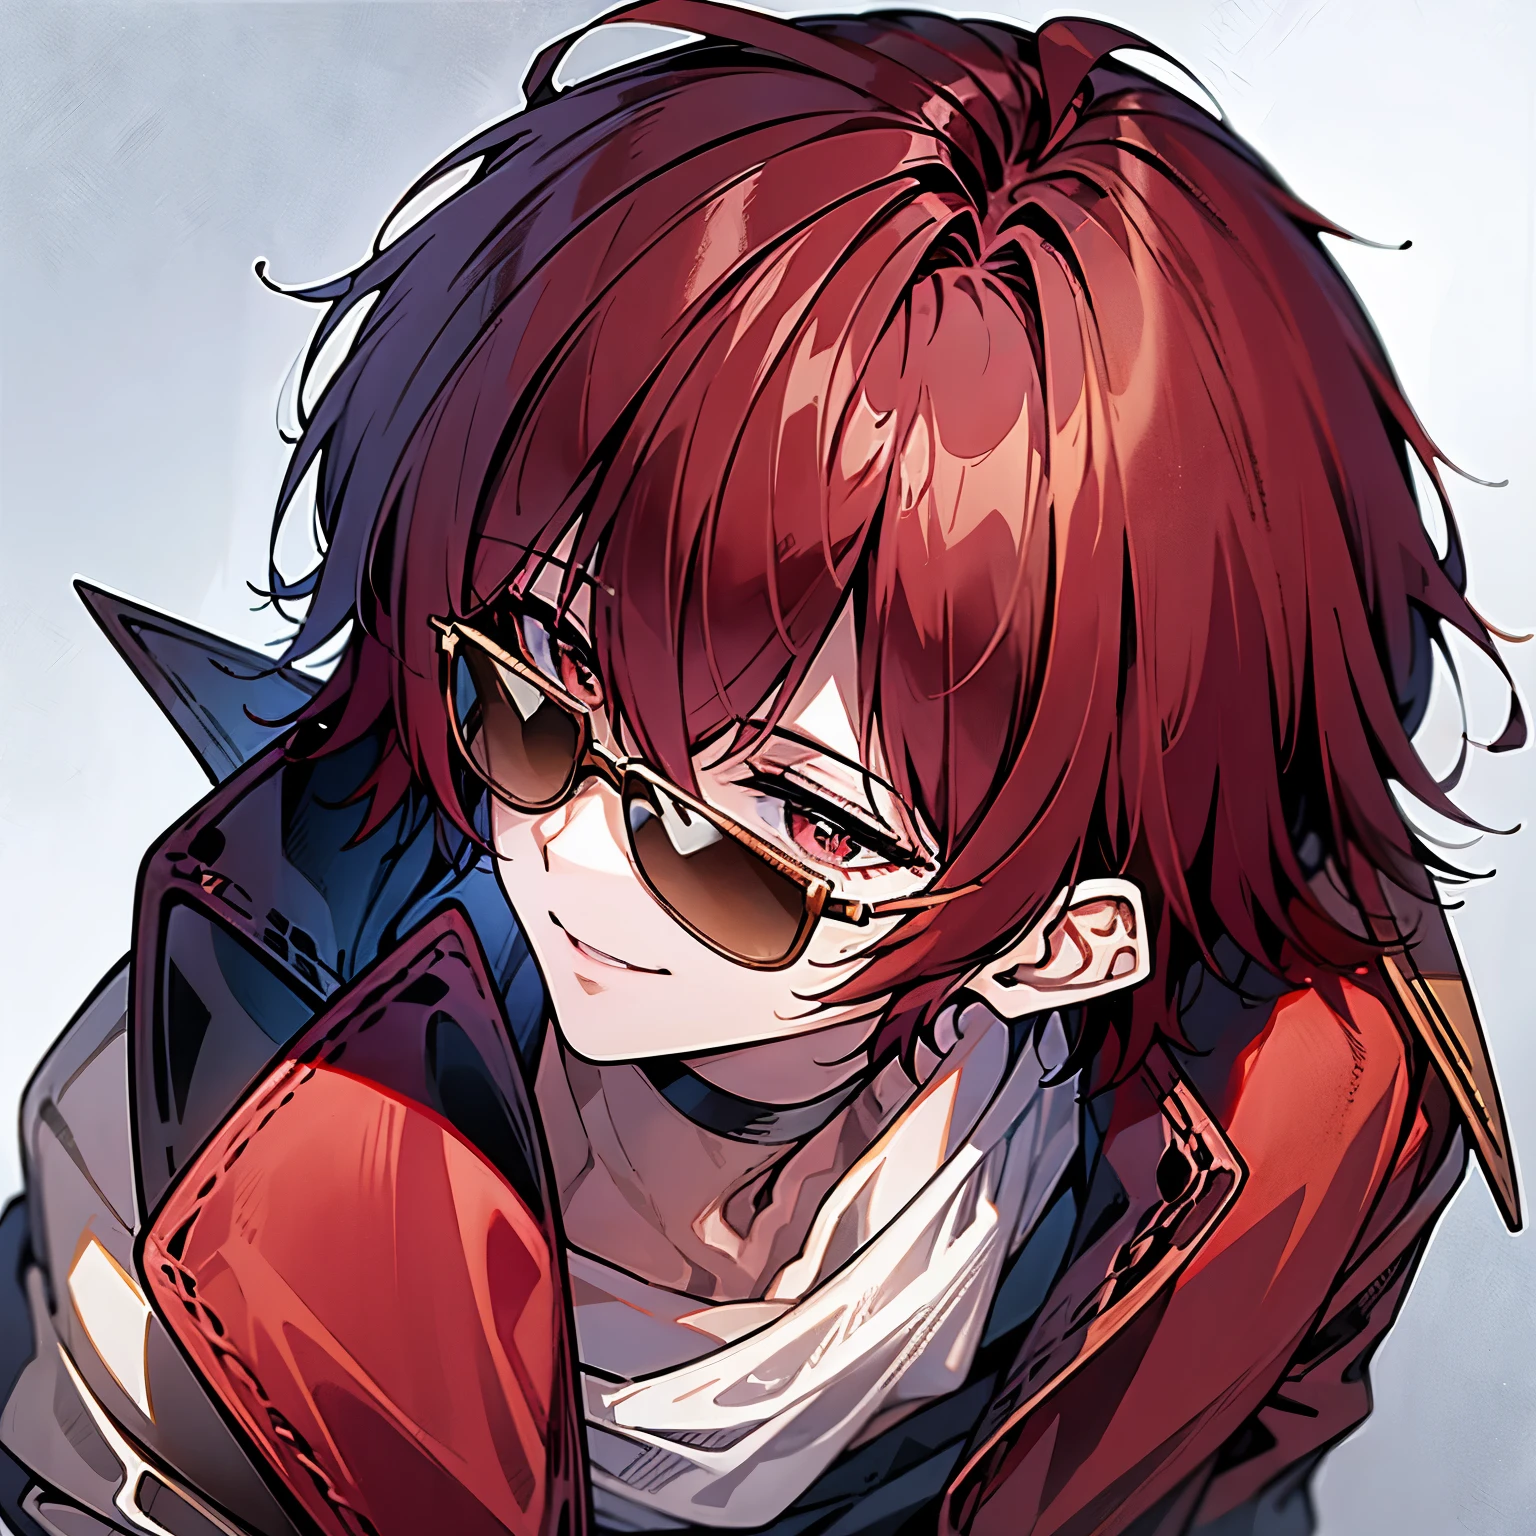 빨간 머리를 가진 남자, 머리 위에 선글라스를 얹고 웃고 있다, 보라색 재킷을 입고